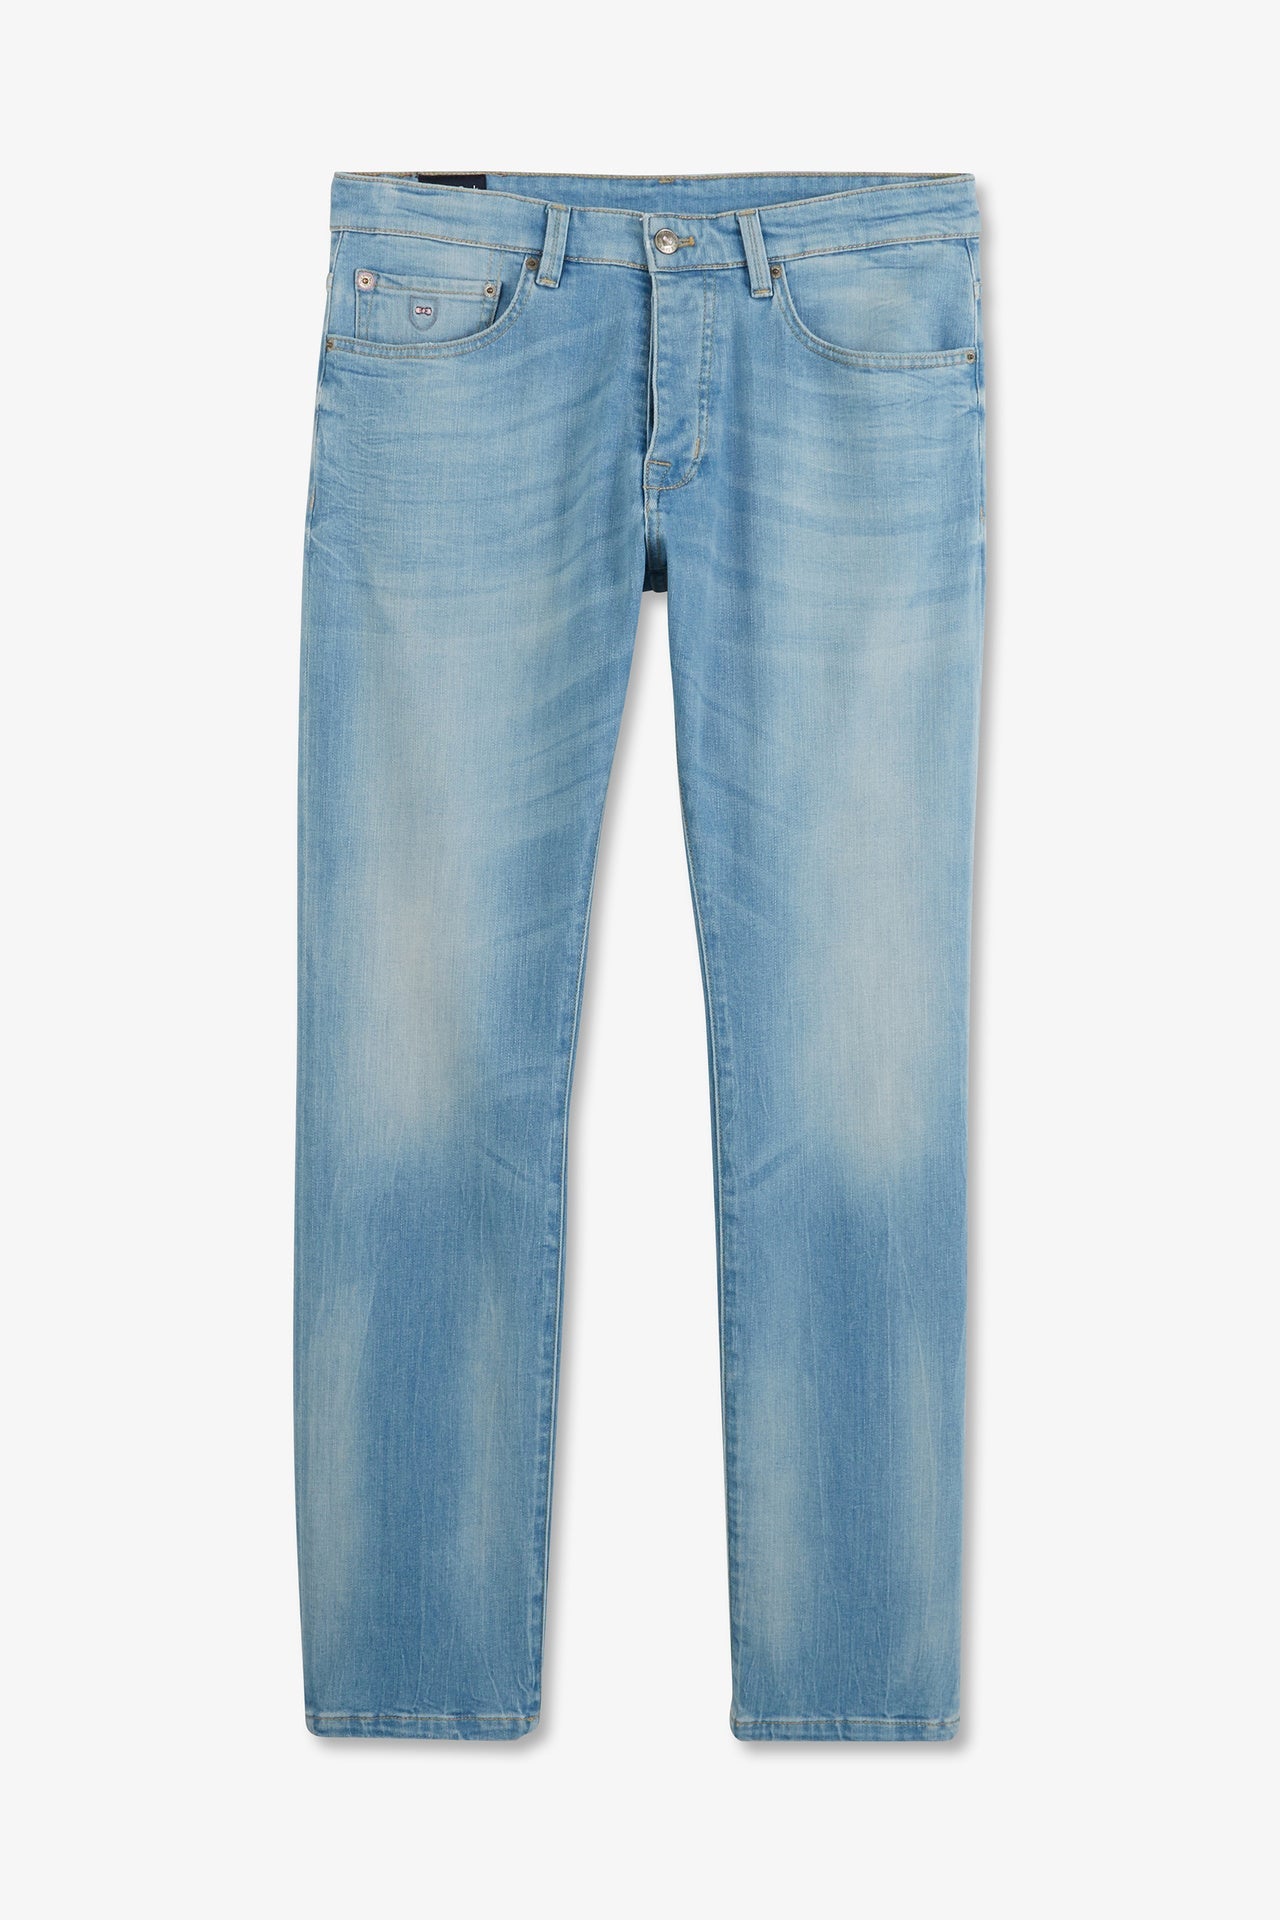 Pantalon bleu droit 5 poches - Image 2